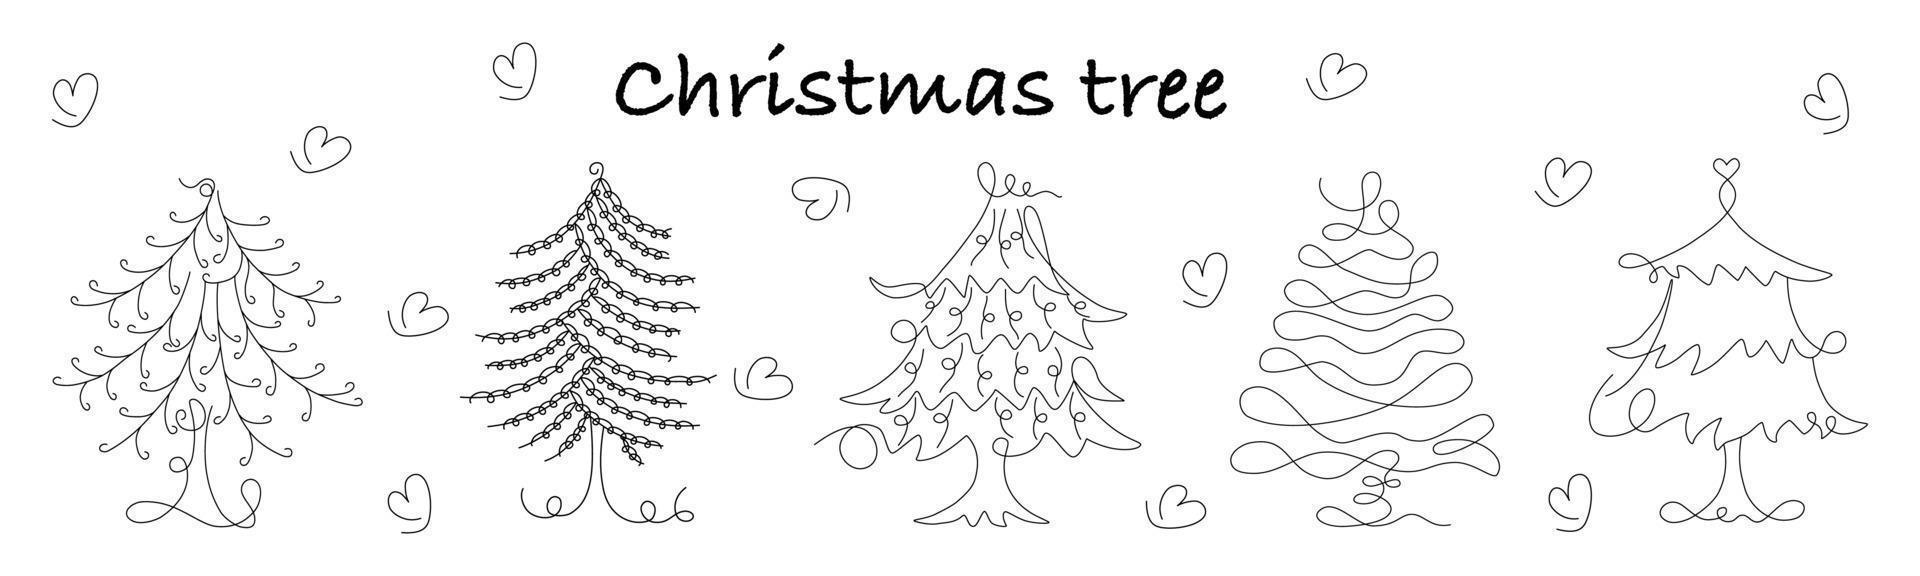 Weihnachtsbaum-Vektorset im Doodle-Stil auf weißem Hintergrund. zum Dekorieren von Weihnachtsmotiven, Weihnachtskarten, Digitaldrucken, Aufklebern, Sammelalben, Taschendesigns und mehr. vektor